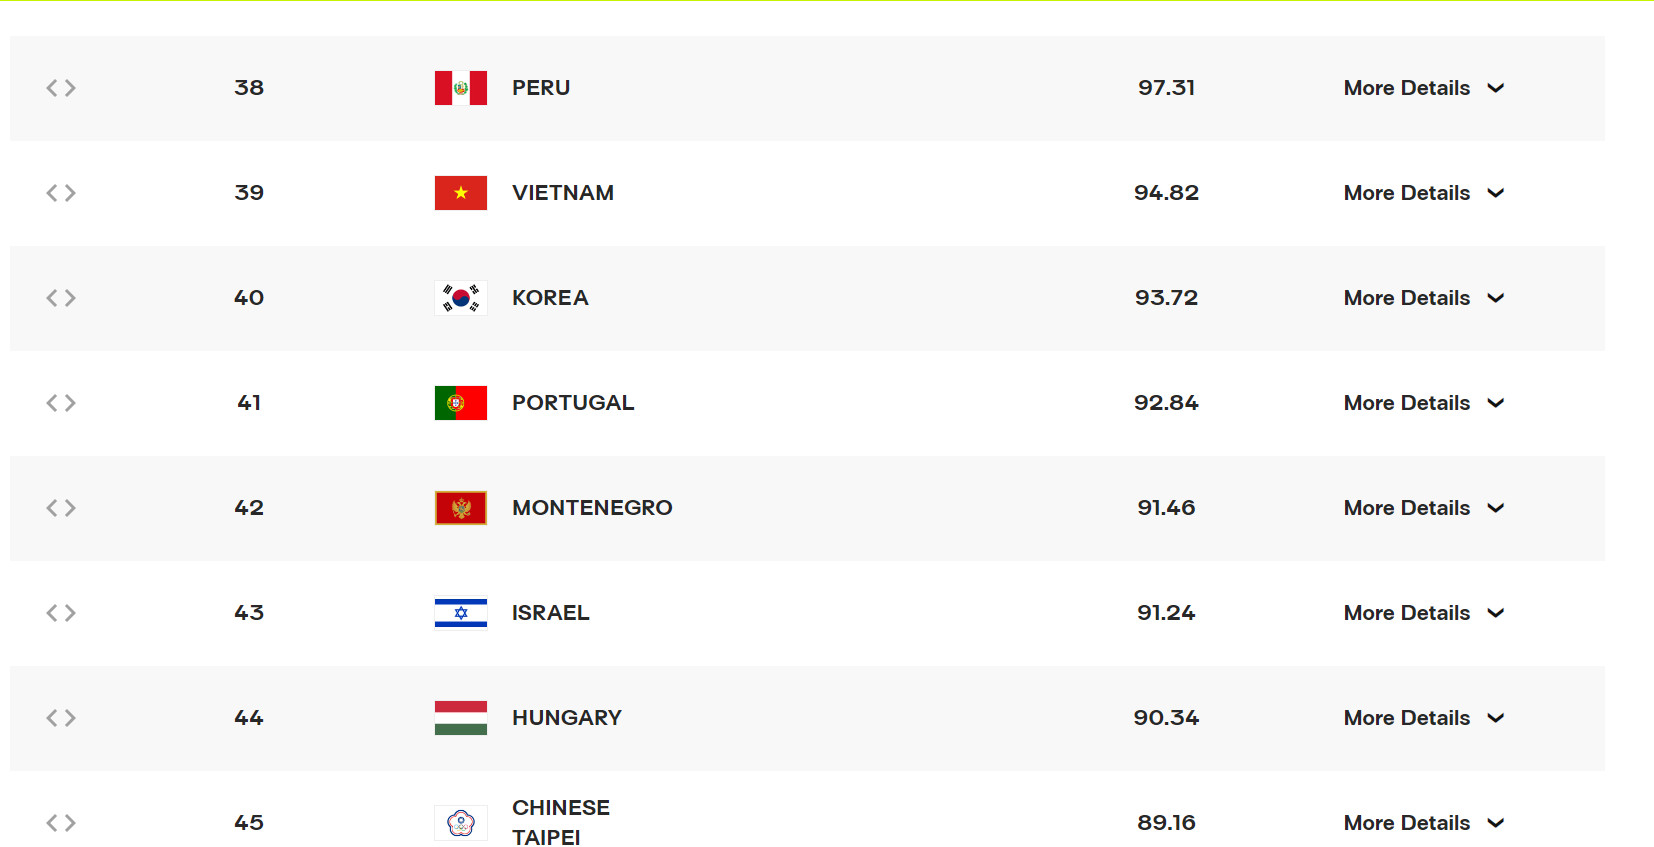 Bóng chuyền nữ Việt Nam vượt Hàn Quốc trên bảng xếp hạng thế giới năm 2023. Ảnh chụp màn hình